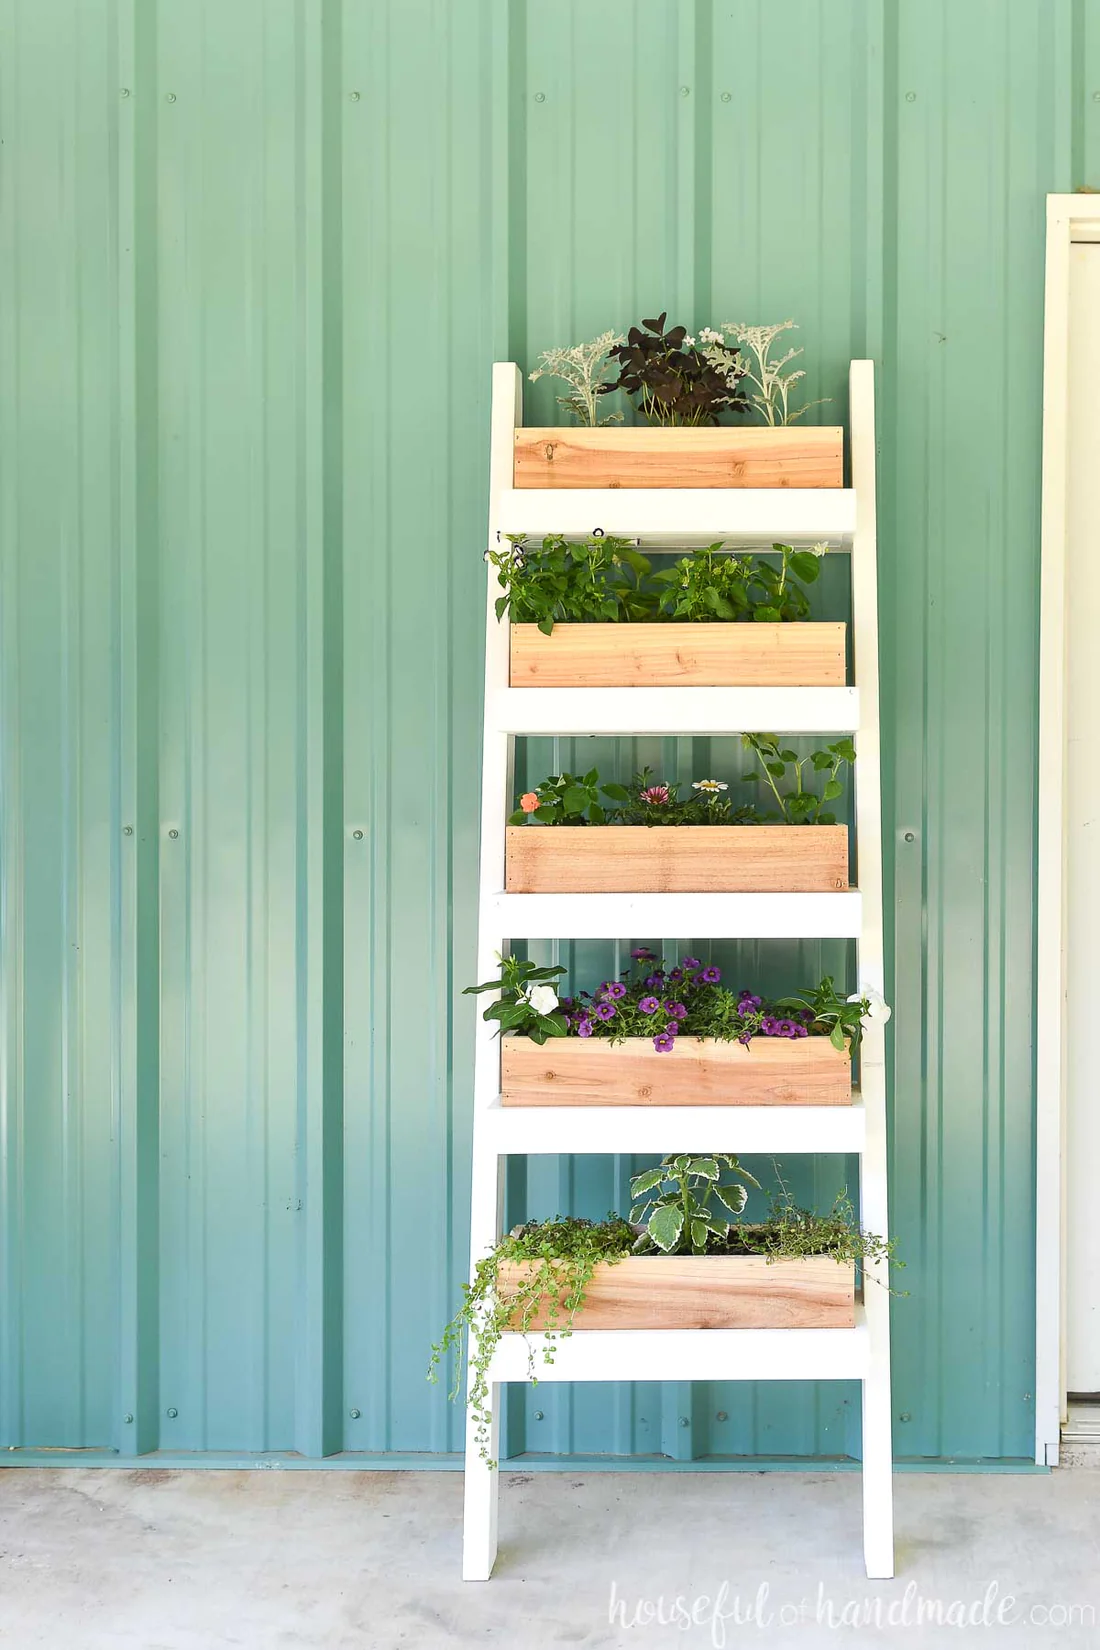 Jardín vertical en forma de escalera, con 5 espacios para macetas de madera y plantas.